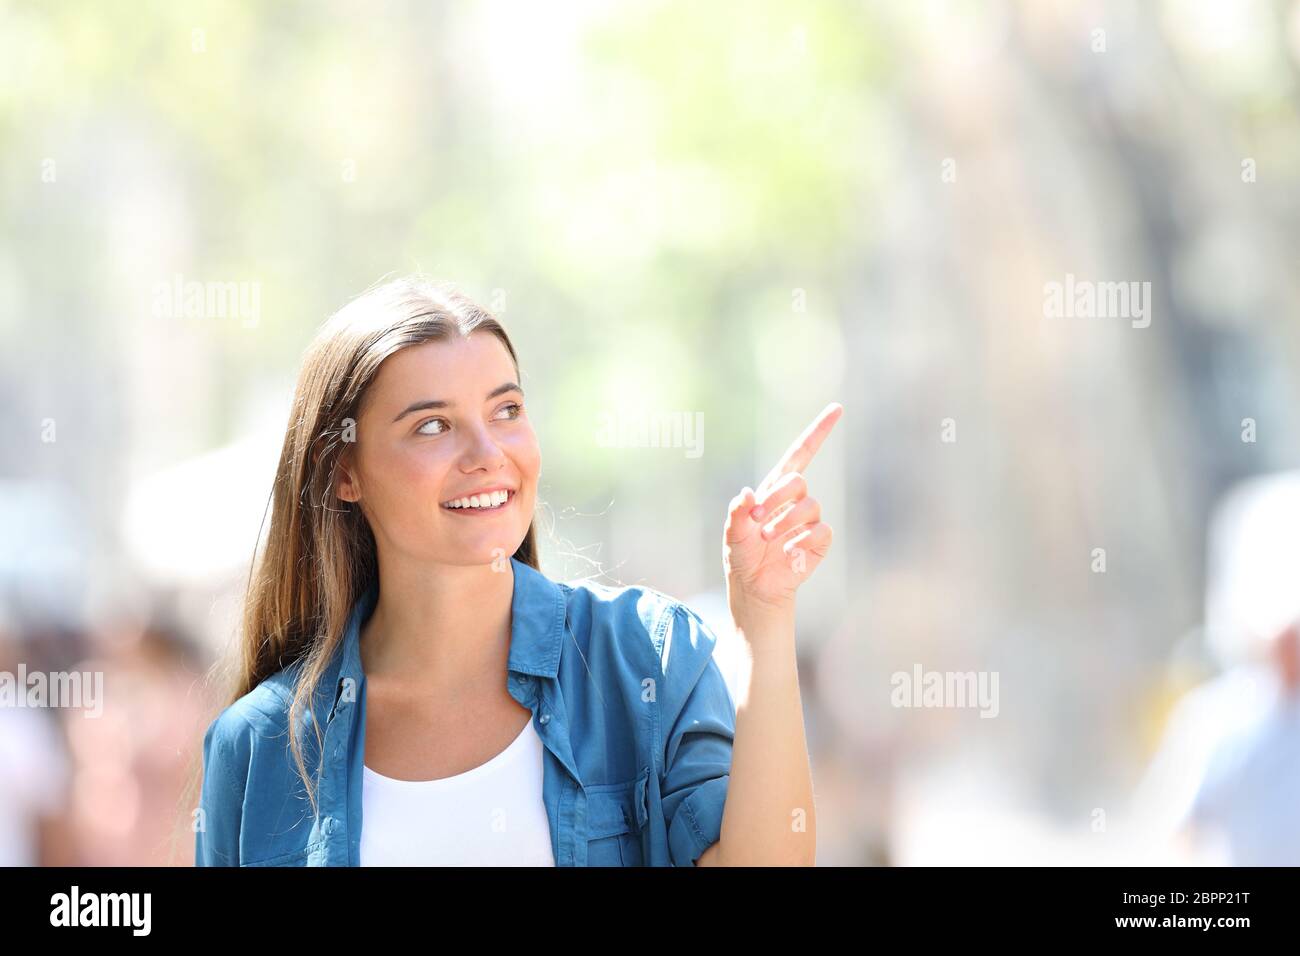 Frint voir portrait of a happy girl pointing at côte dans la rue un jour ensoleillé Banque D'Images